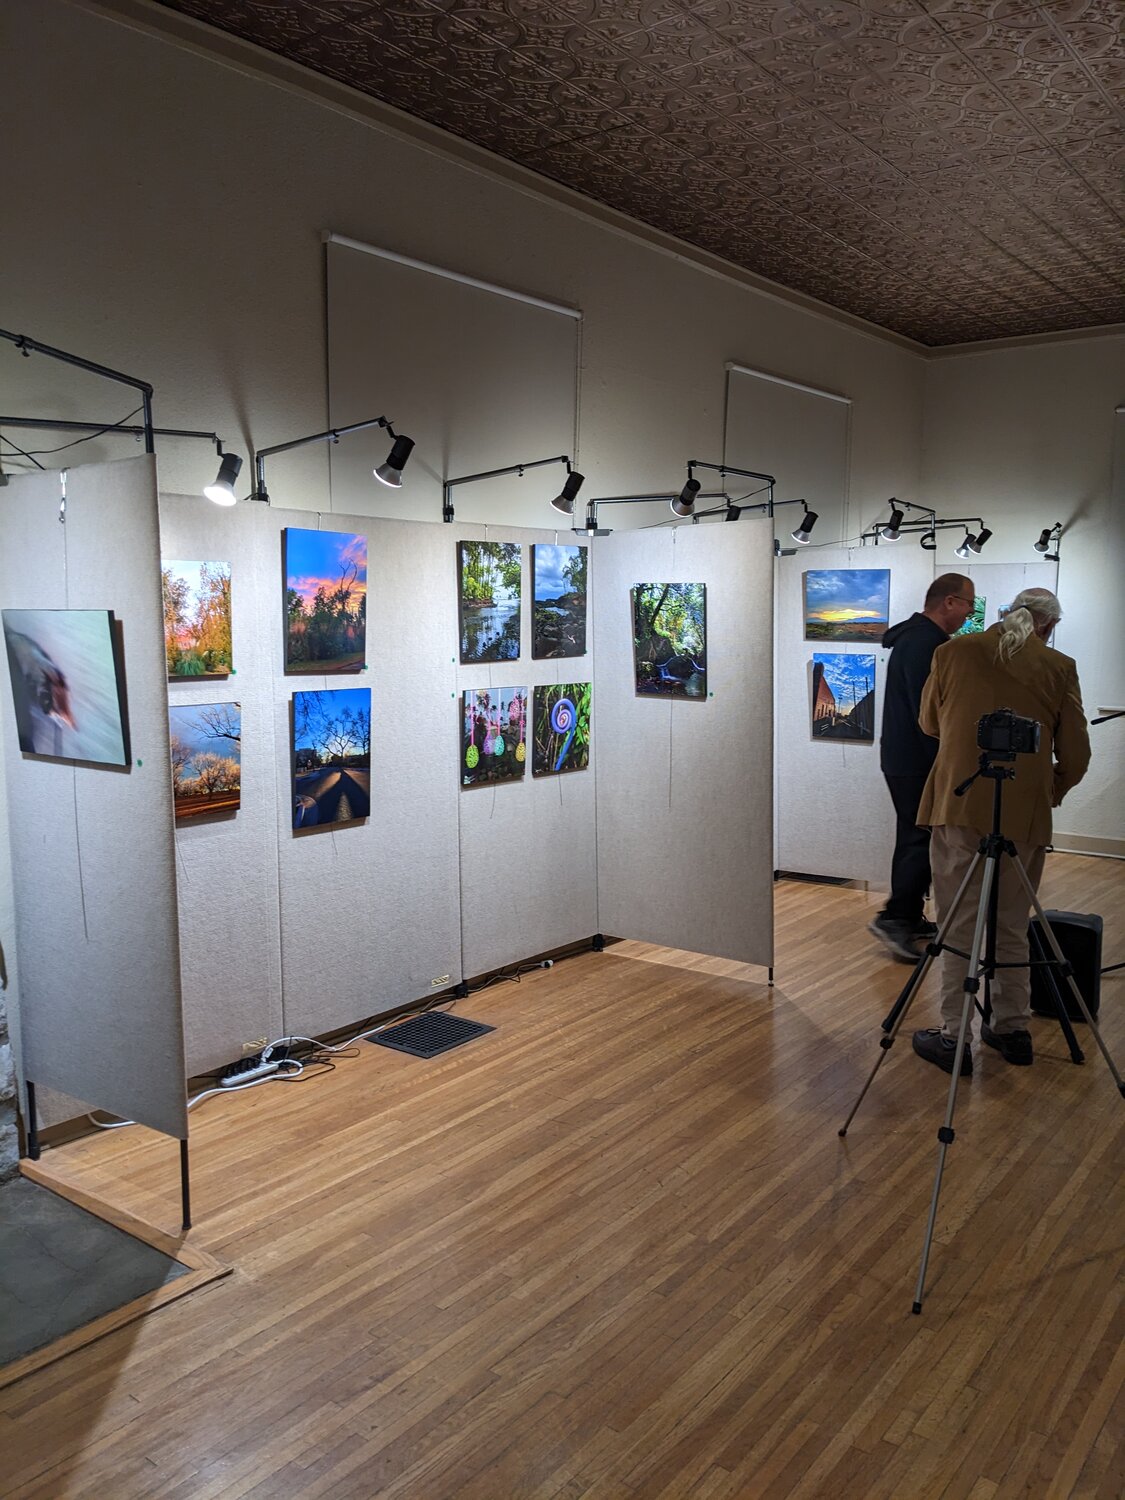 Rochelle Williams photos on display at Otero Artspace in Alamogordo.